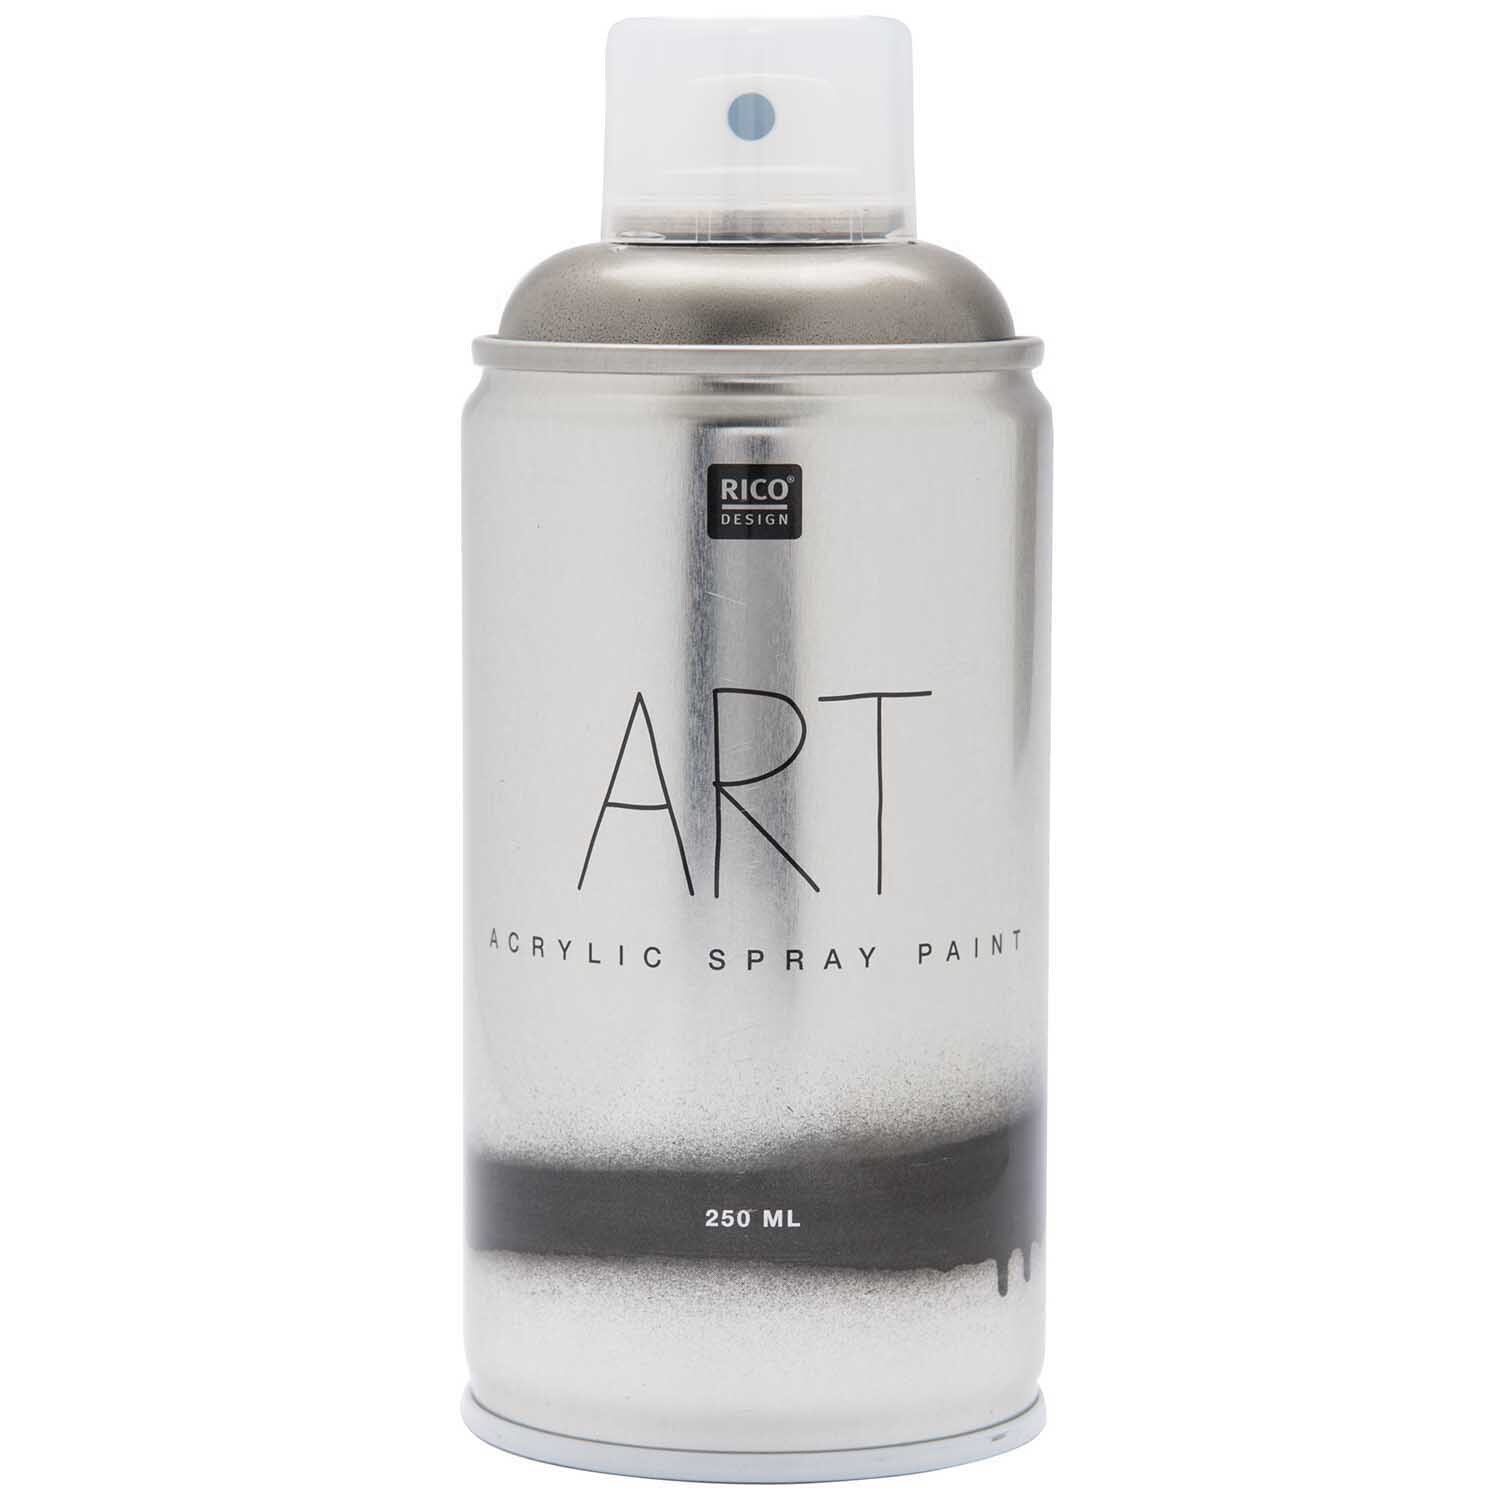 Art Acrylic Spray Paint silber 250ml